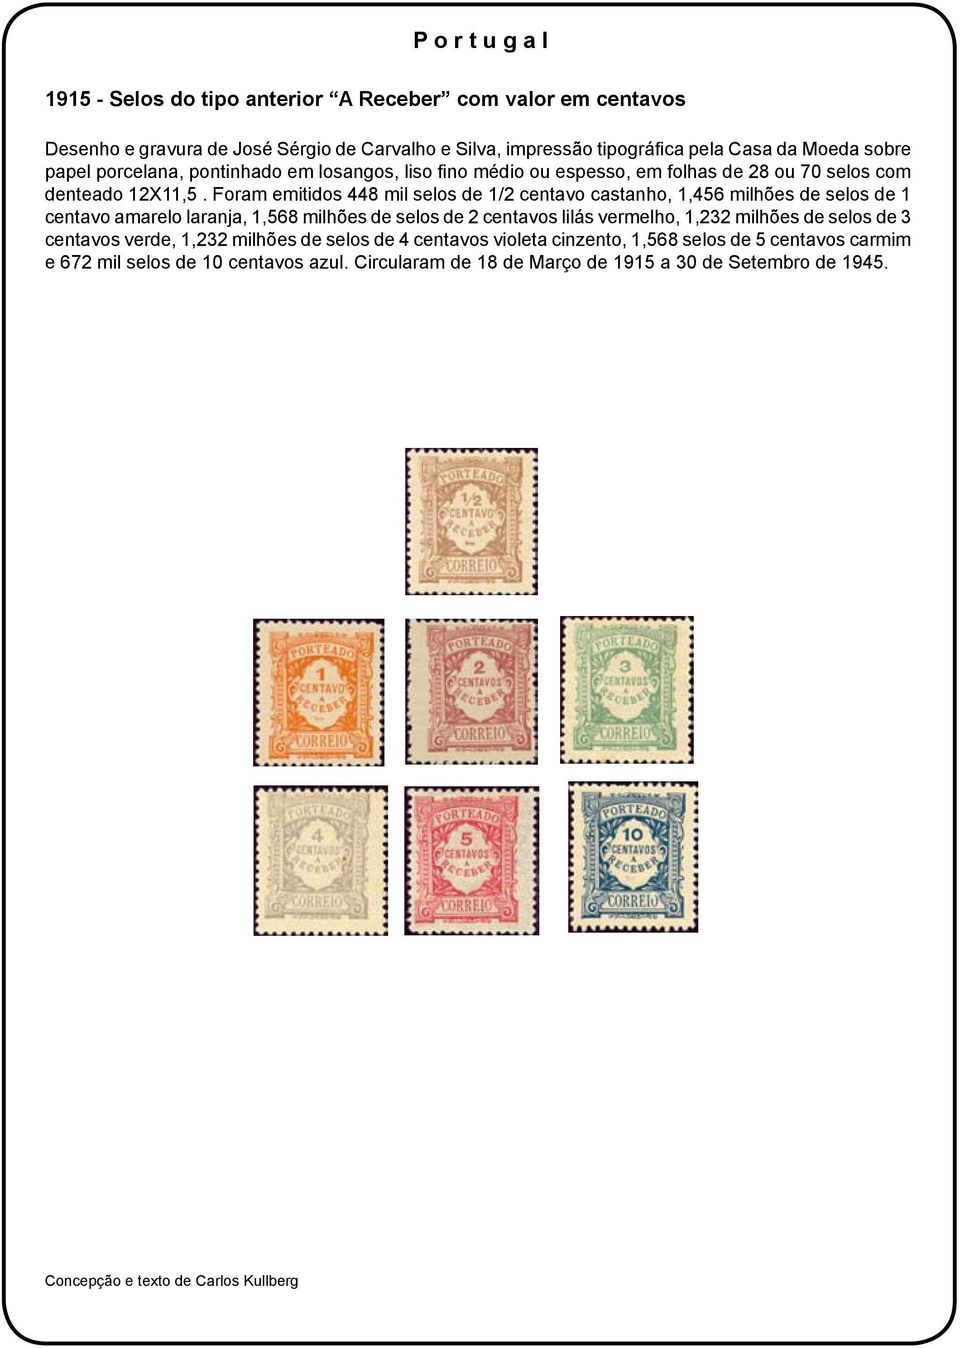 Foram emitidos 448 mil selos de 1/2 centavo castanho, 1,456 milhões de selos de 1 centavo amarelo laranja, 1,568 milhões de selos de 2 centavos lilás vermelho, 1,232